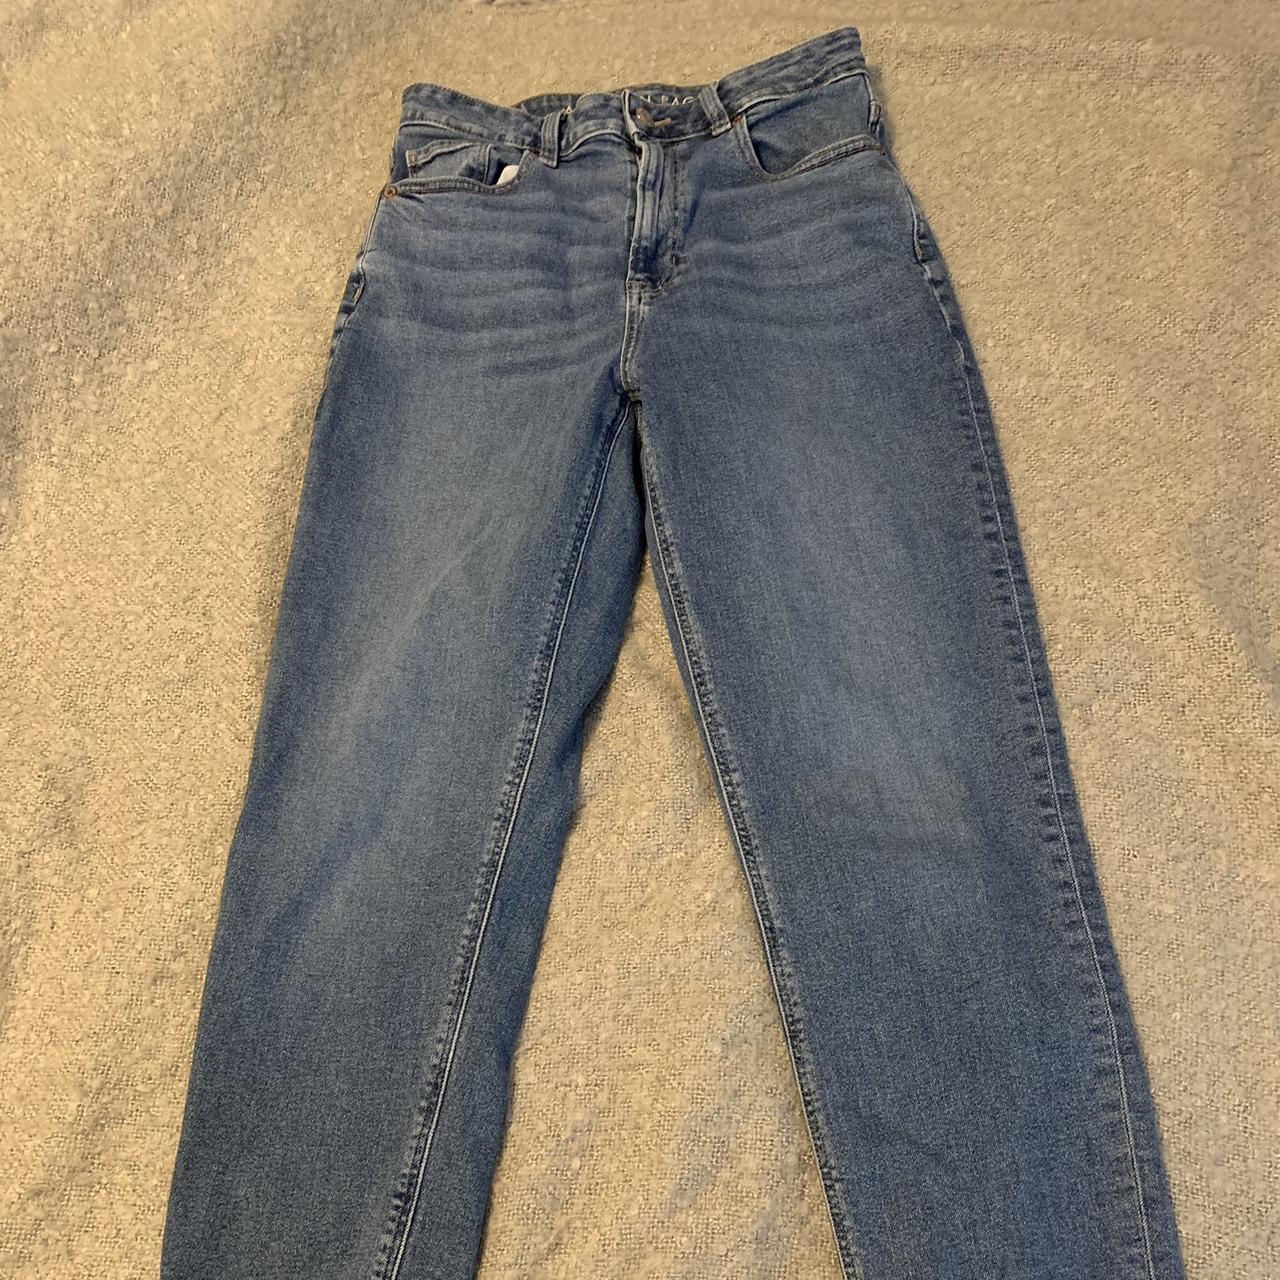 American Eagle Jeans (long) popular mom jean style - Depop